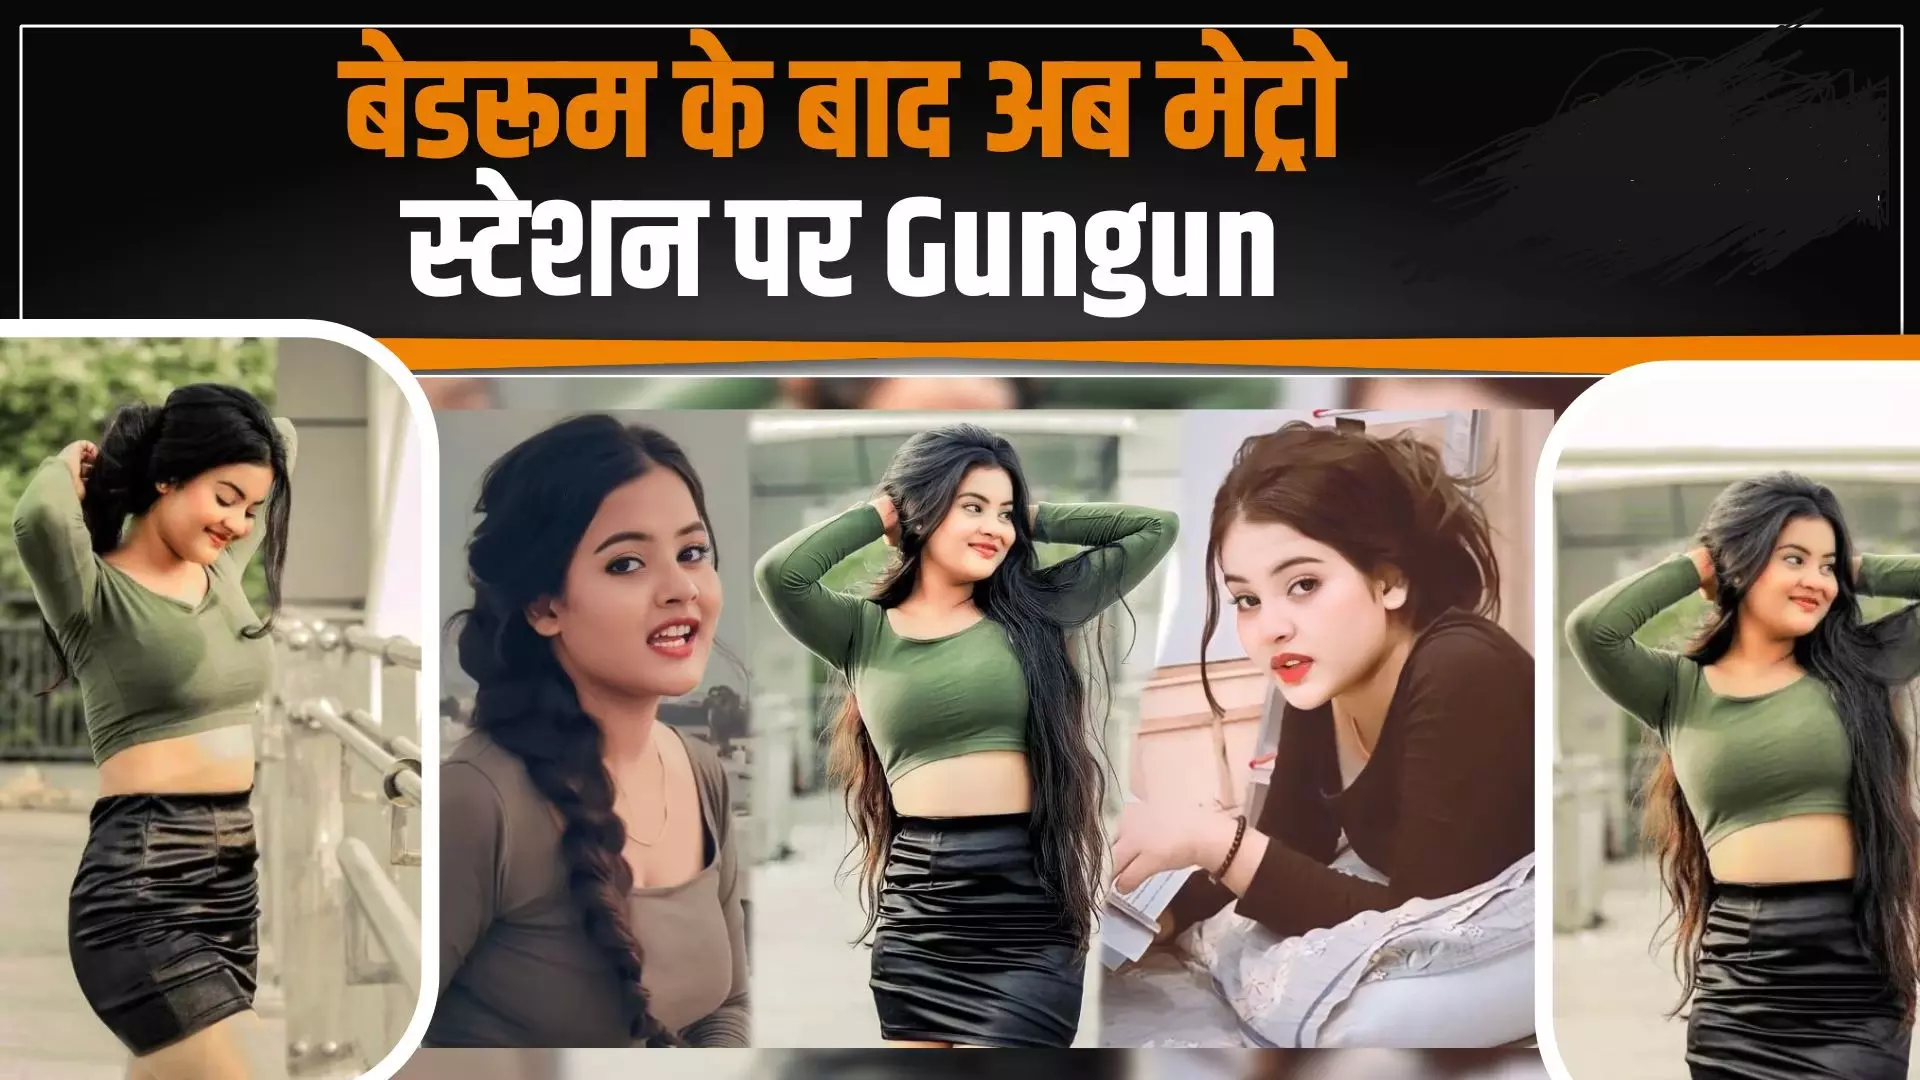 गुनगुन गुप्ता का अब दूसरा Sexy video हुआ वायरल, देखिए पूरा वीडियो